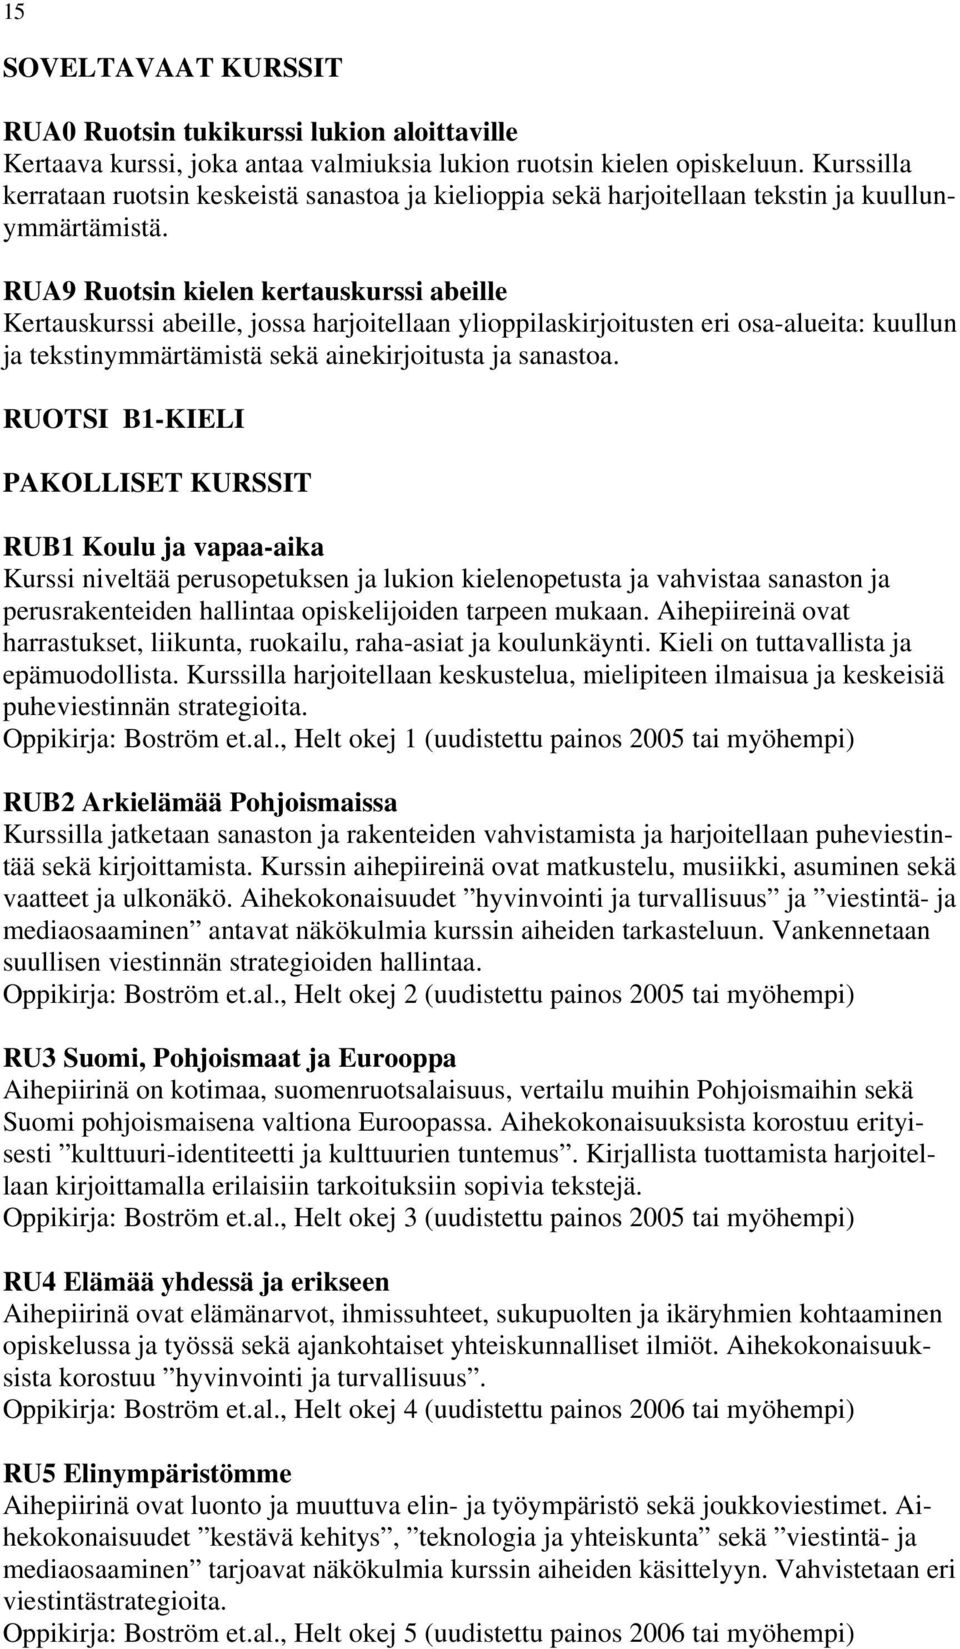 RUA9 Ruotsin kielen kertauskurssi abeille Kertauskurssi abeille, jossa harjoitellaan ylioppilaskirjoitusten eri osa-alueita: kuullun ja tekstinymmärtämistä sekä ainekirjoitusta ja sanastoa.